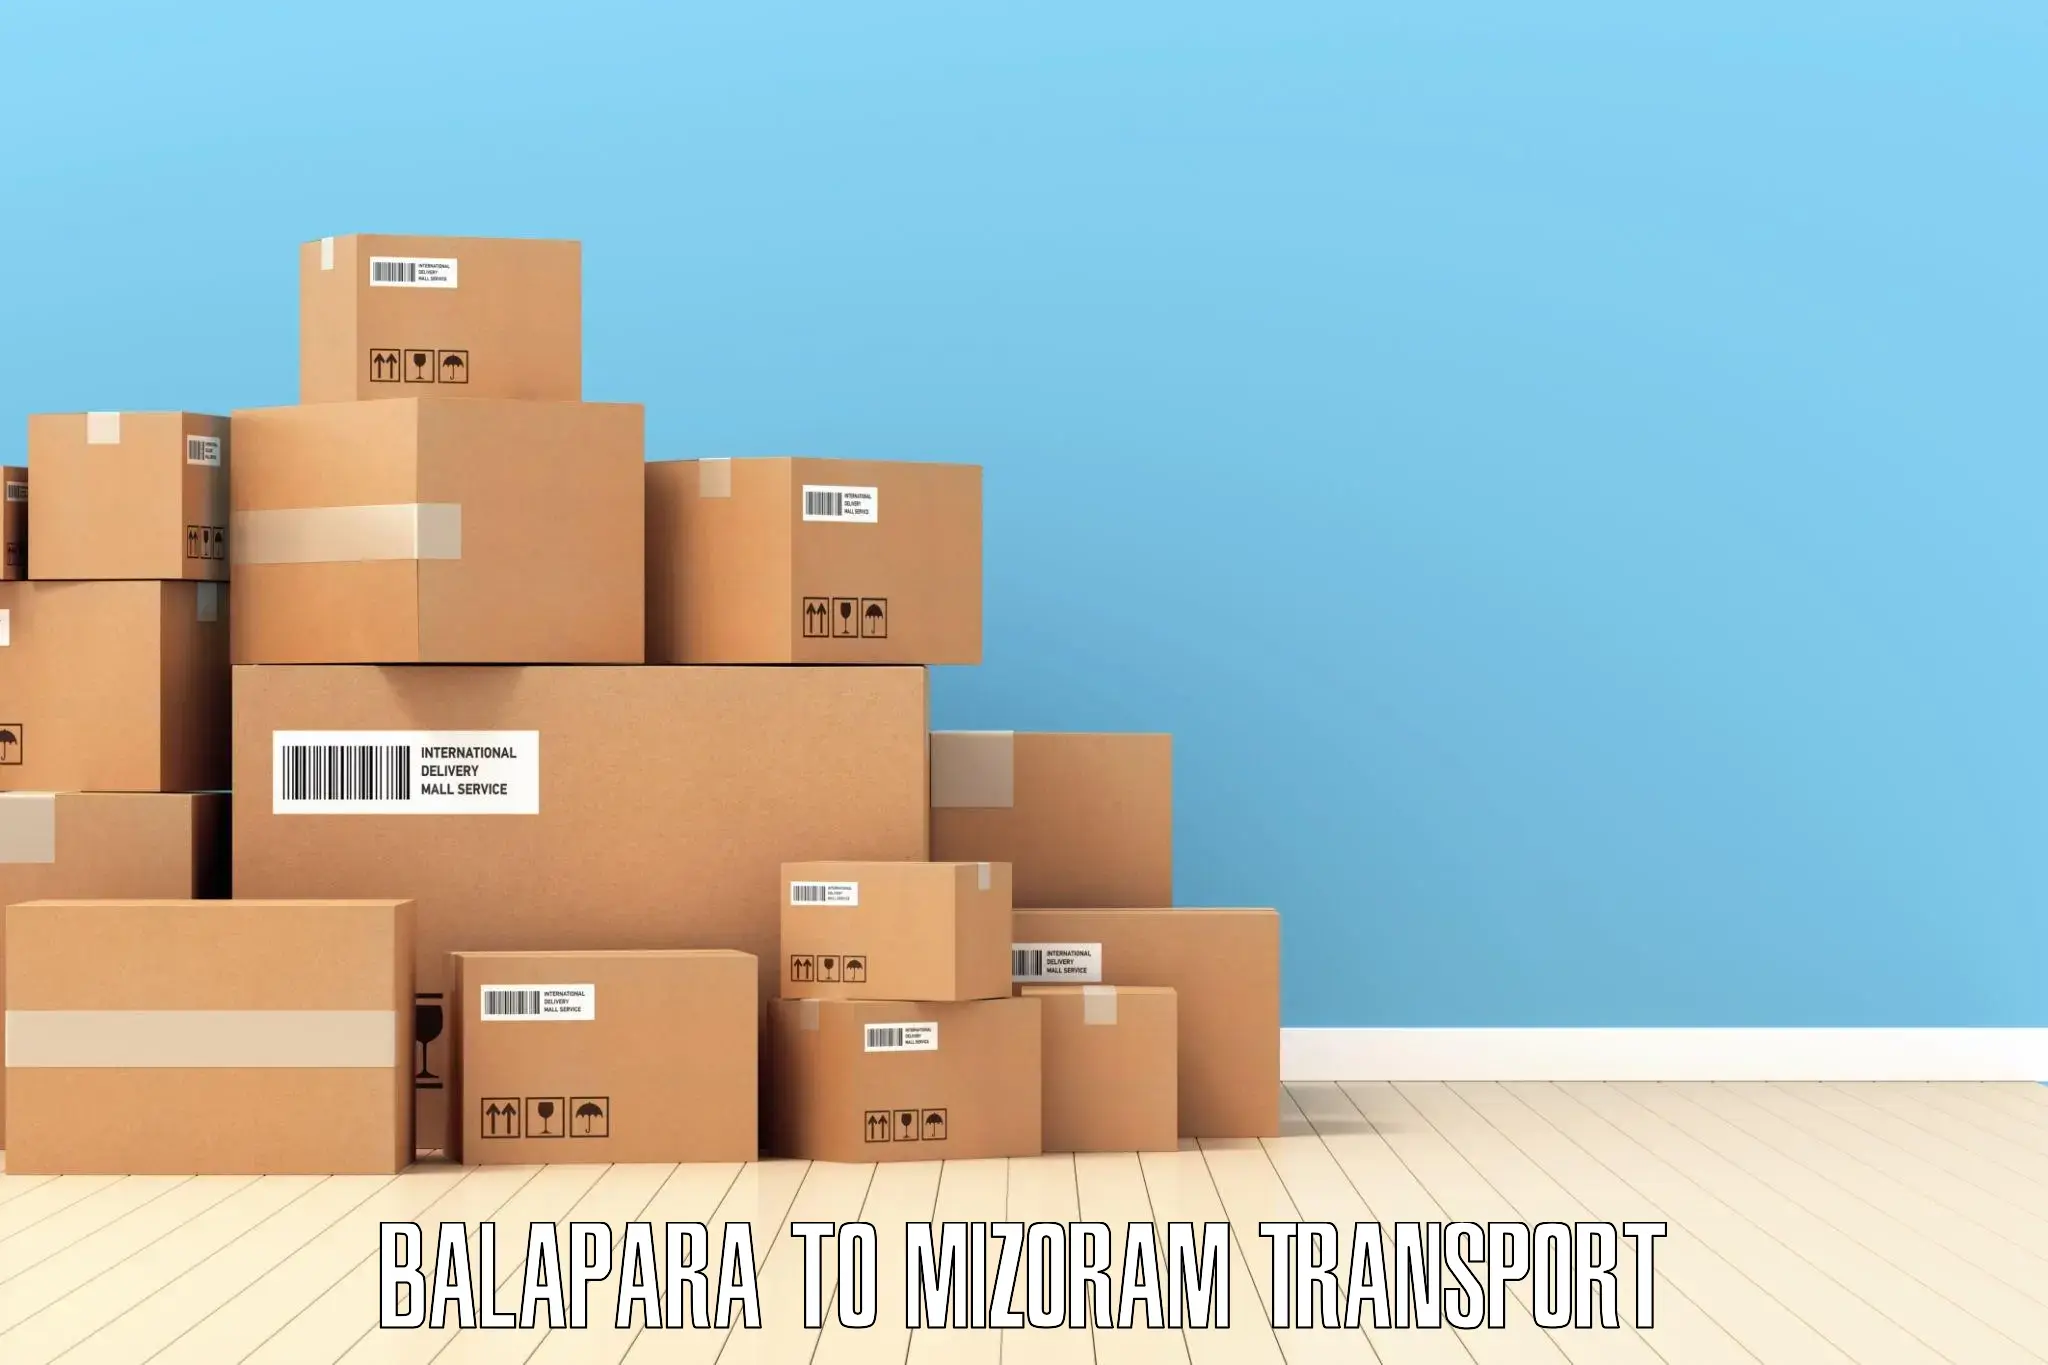 Transport in sharing in Balapara to Aizawl